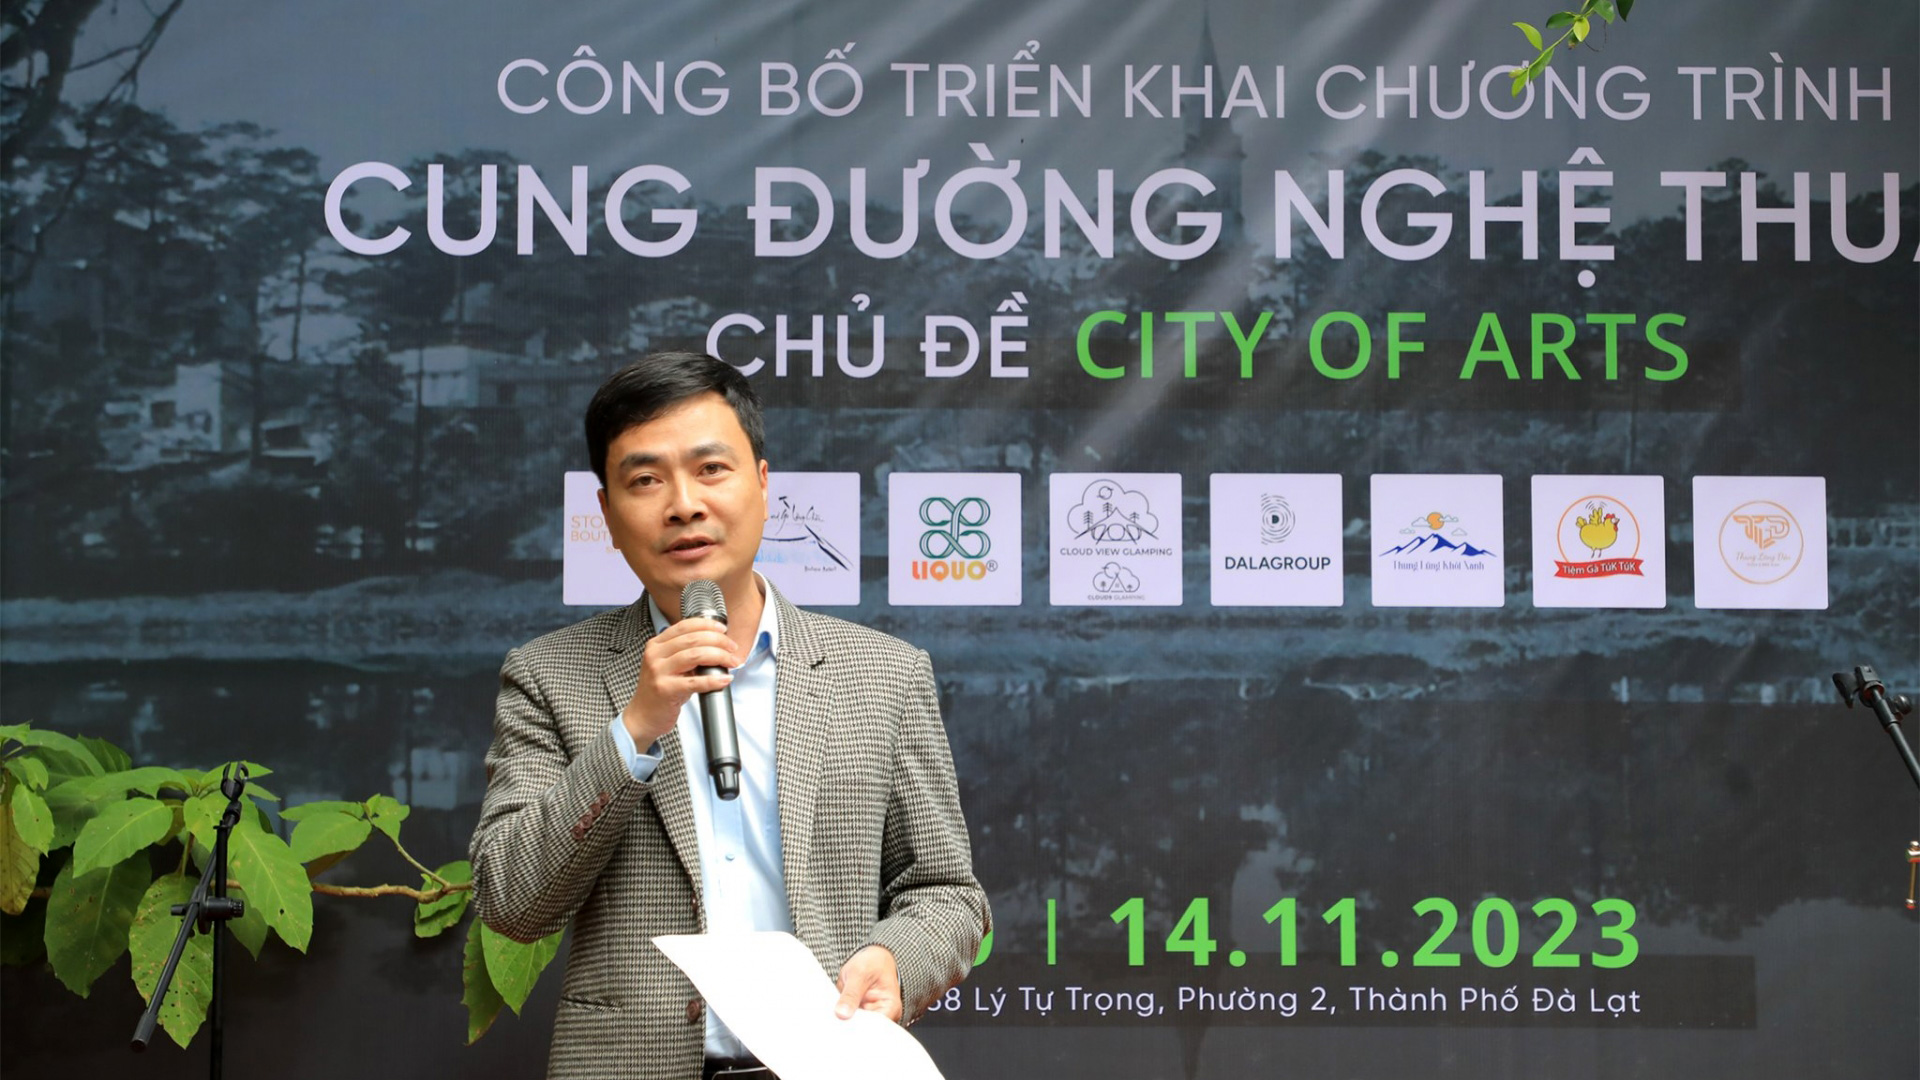 Ông Trần Quốc Khang – Phó trưởng Phòng Văn hoá TP Đà Lạt cho biết, cung đường nghệ thuật là dự án nhằm góp phần thúc đẩy sự kết nối trong cộng đồng, tạo ra một điểm giao lưu độc đáo, sáng tạo cho cả người dân địa phương và du khách